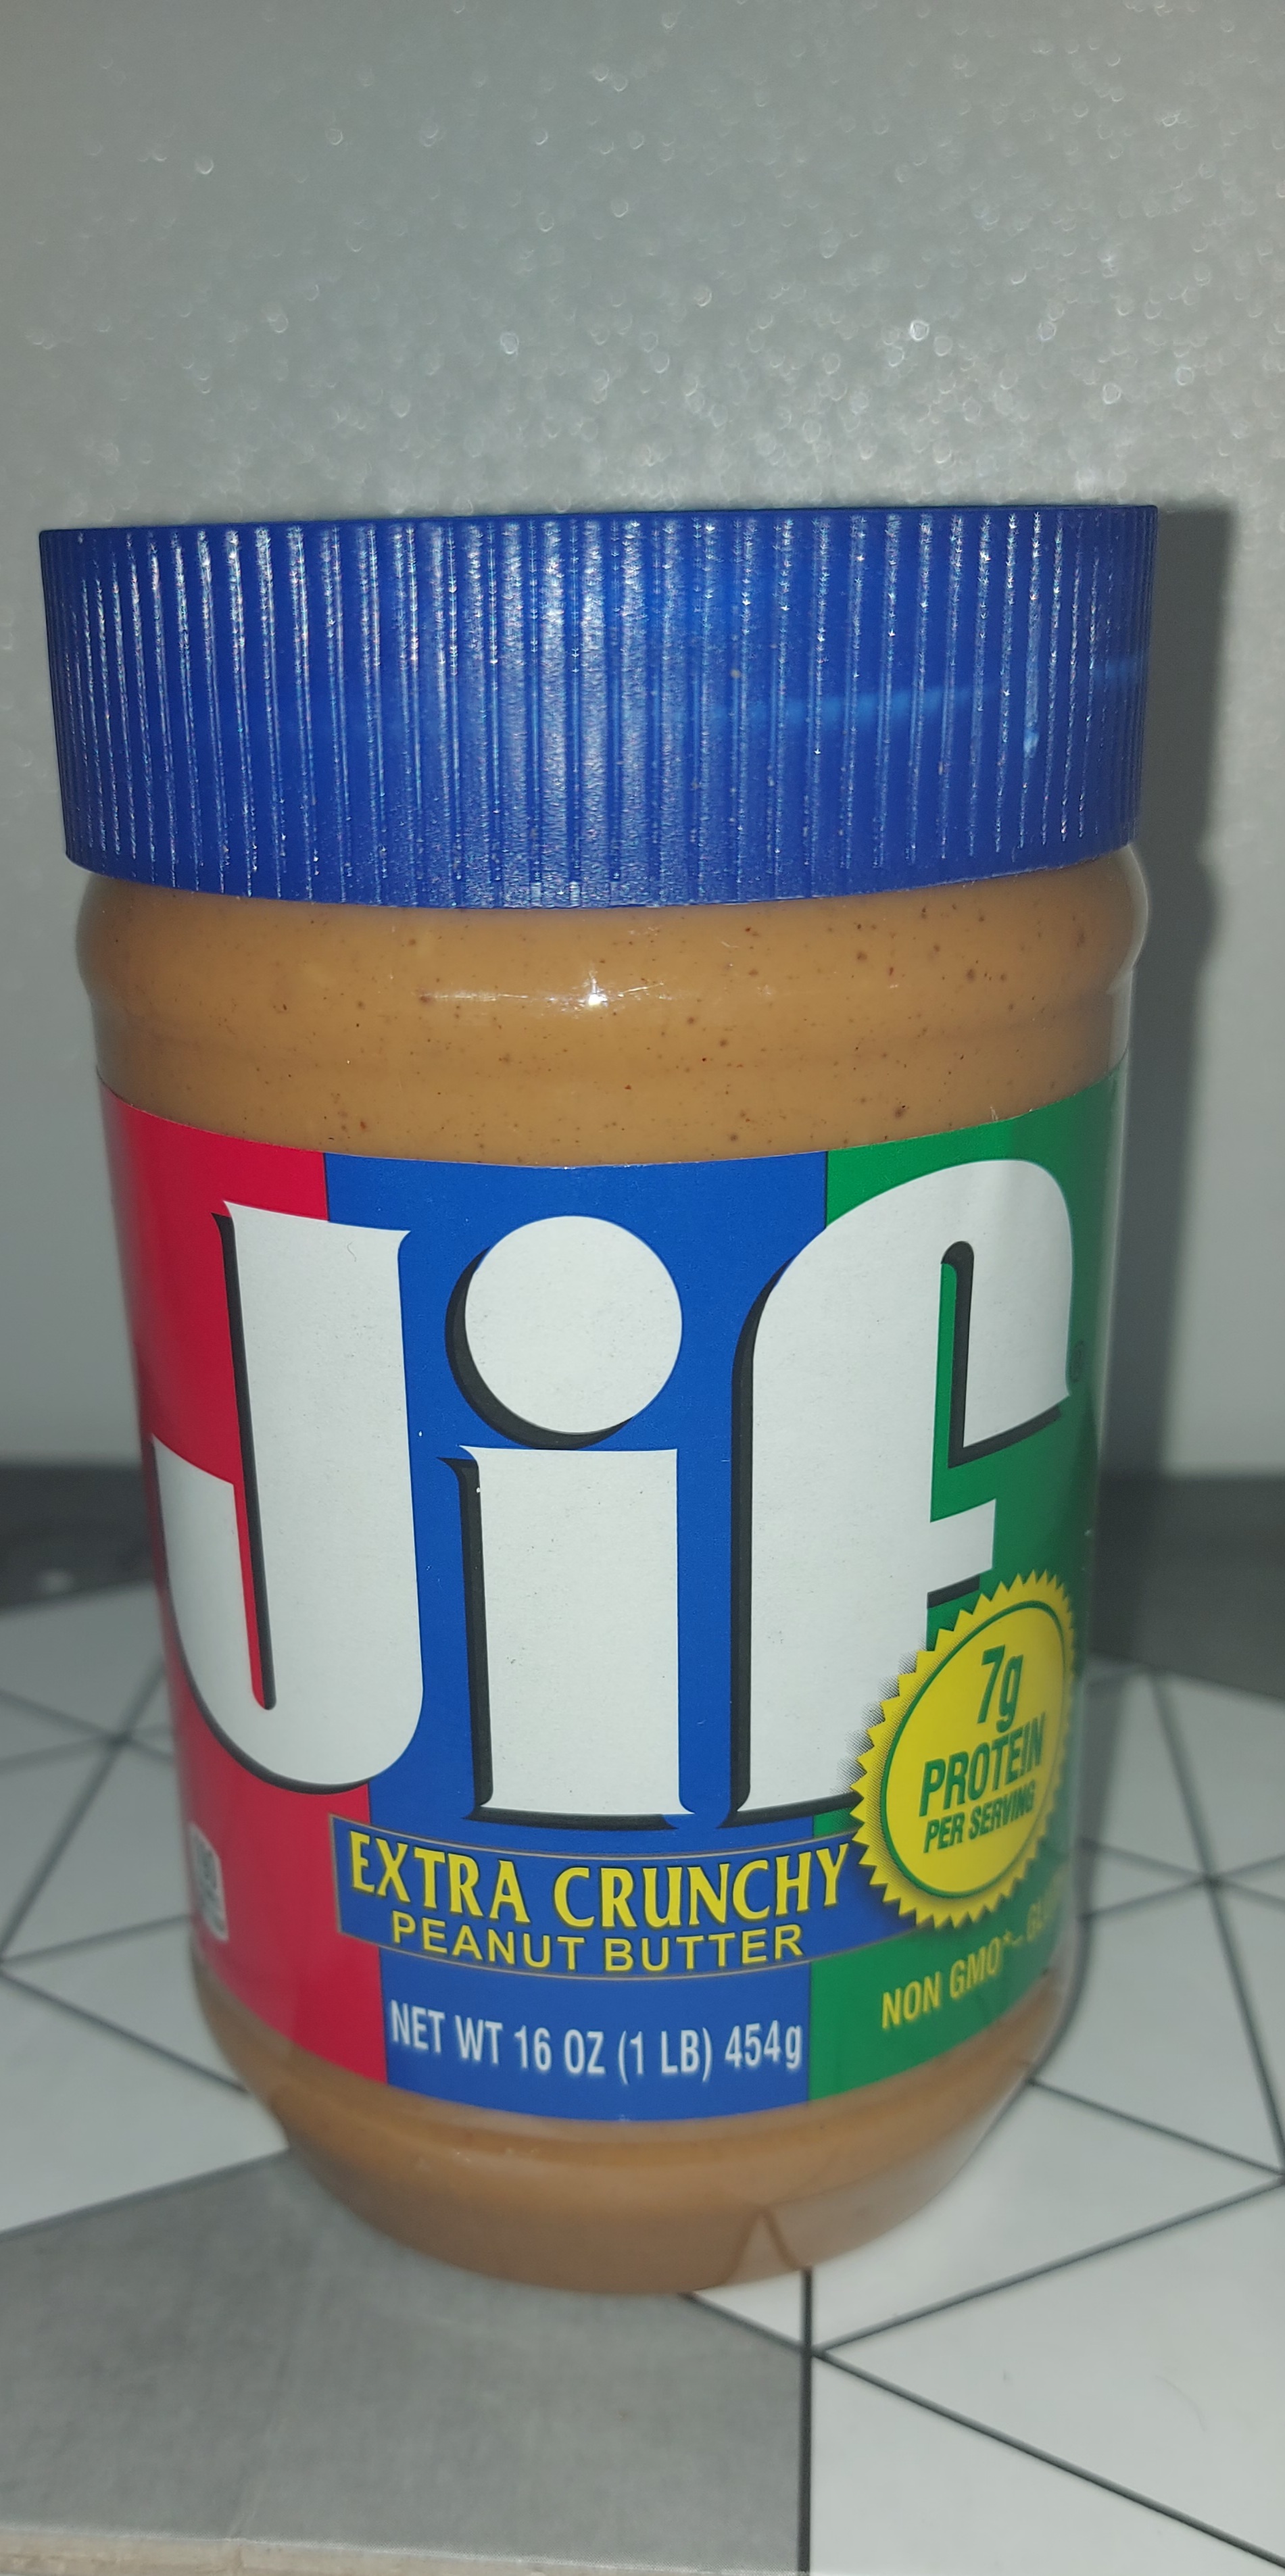  کره بادام زمینی کرانچی جیف مقدار 454 گرم Jif Crunchy Peanut Butter